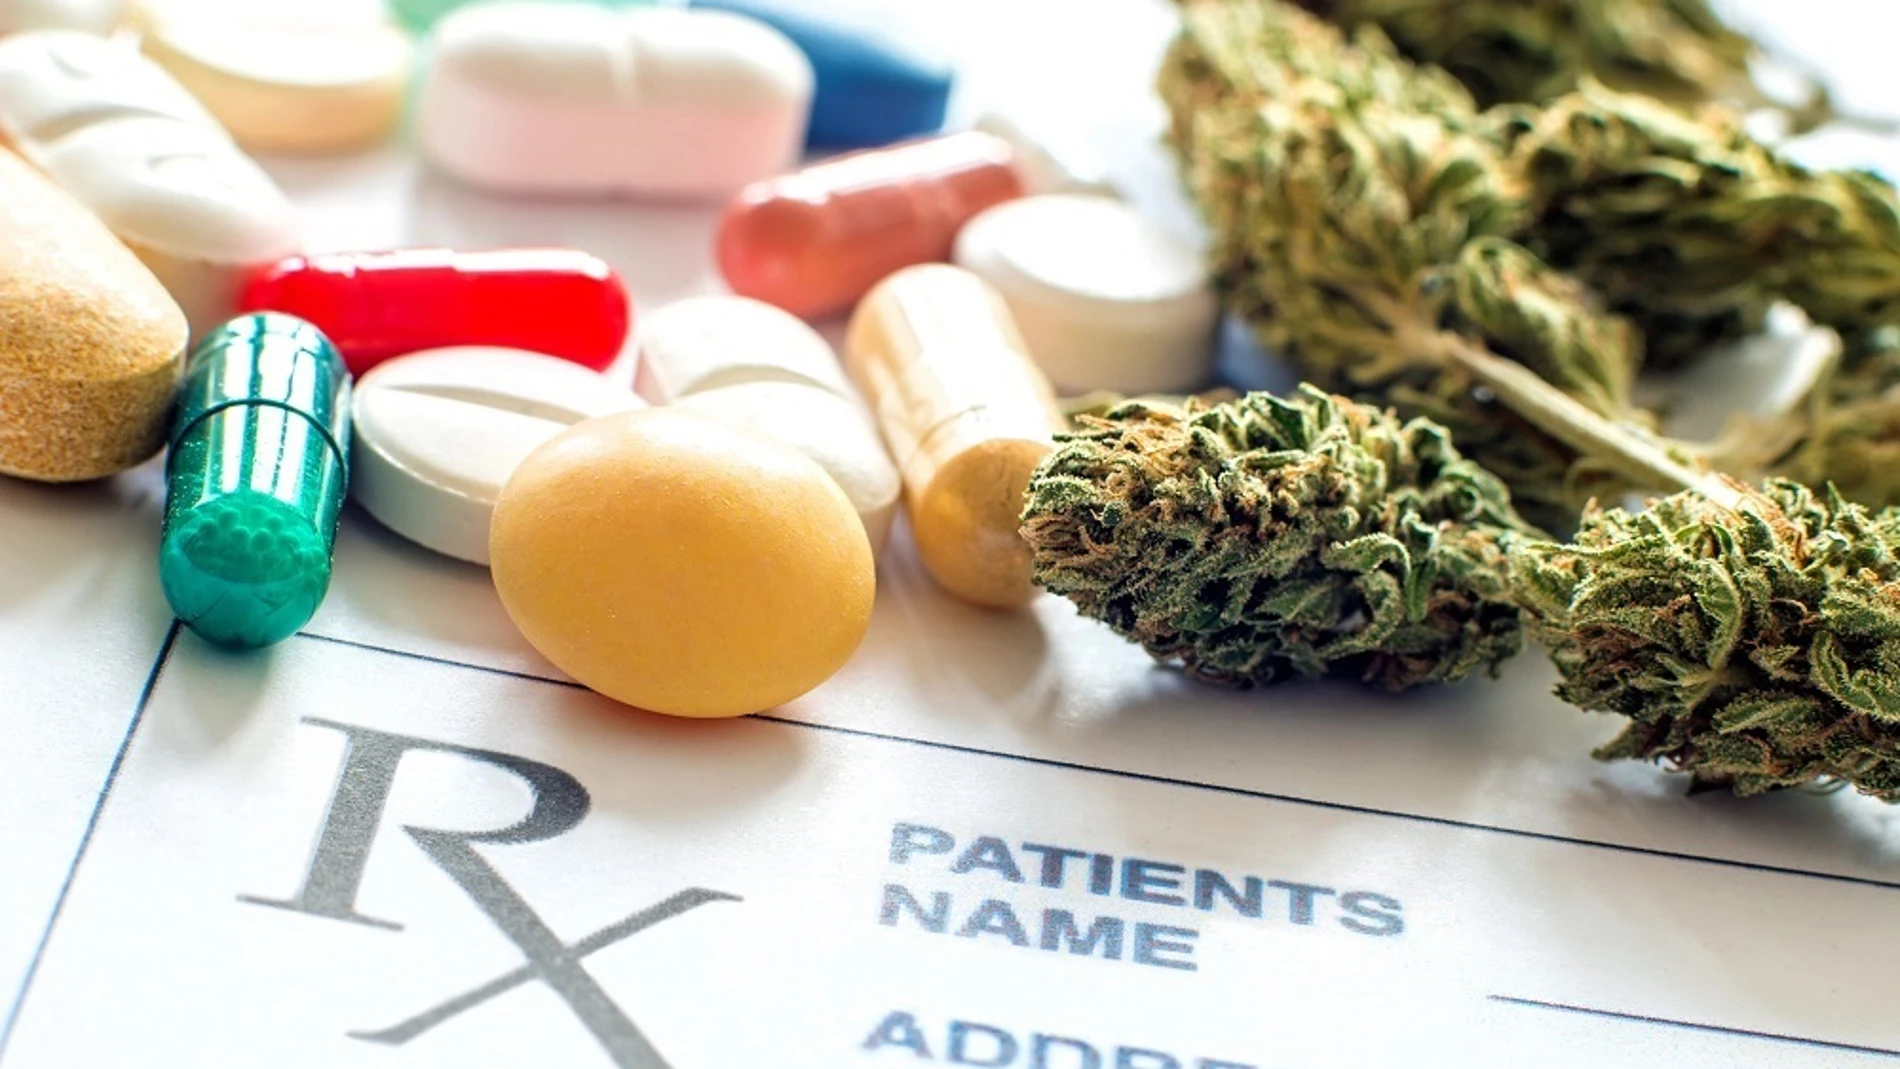 Imagen de archivo. Primer plano de pastillas recetadas con cannabis medicinal y papel recetado.